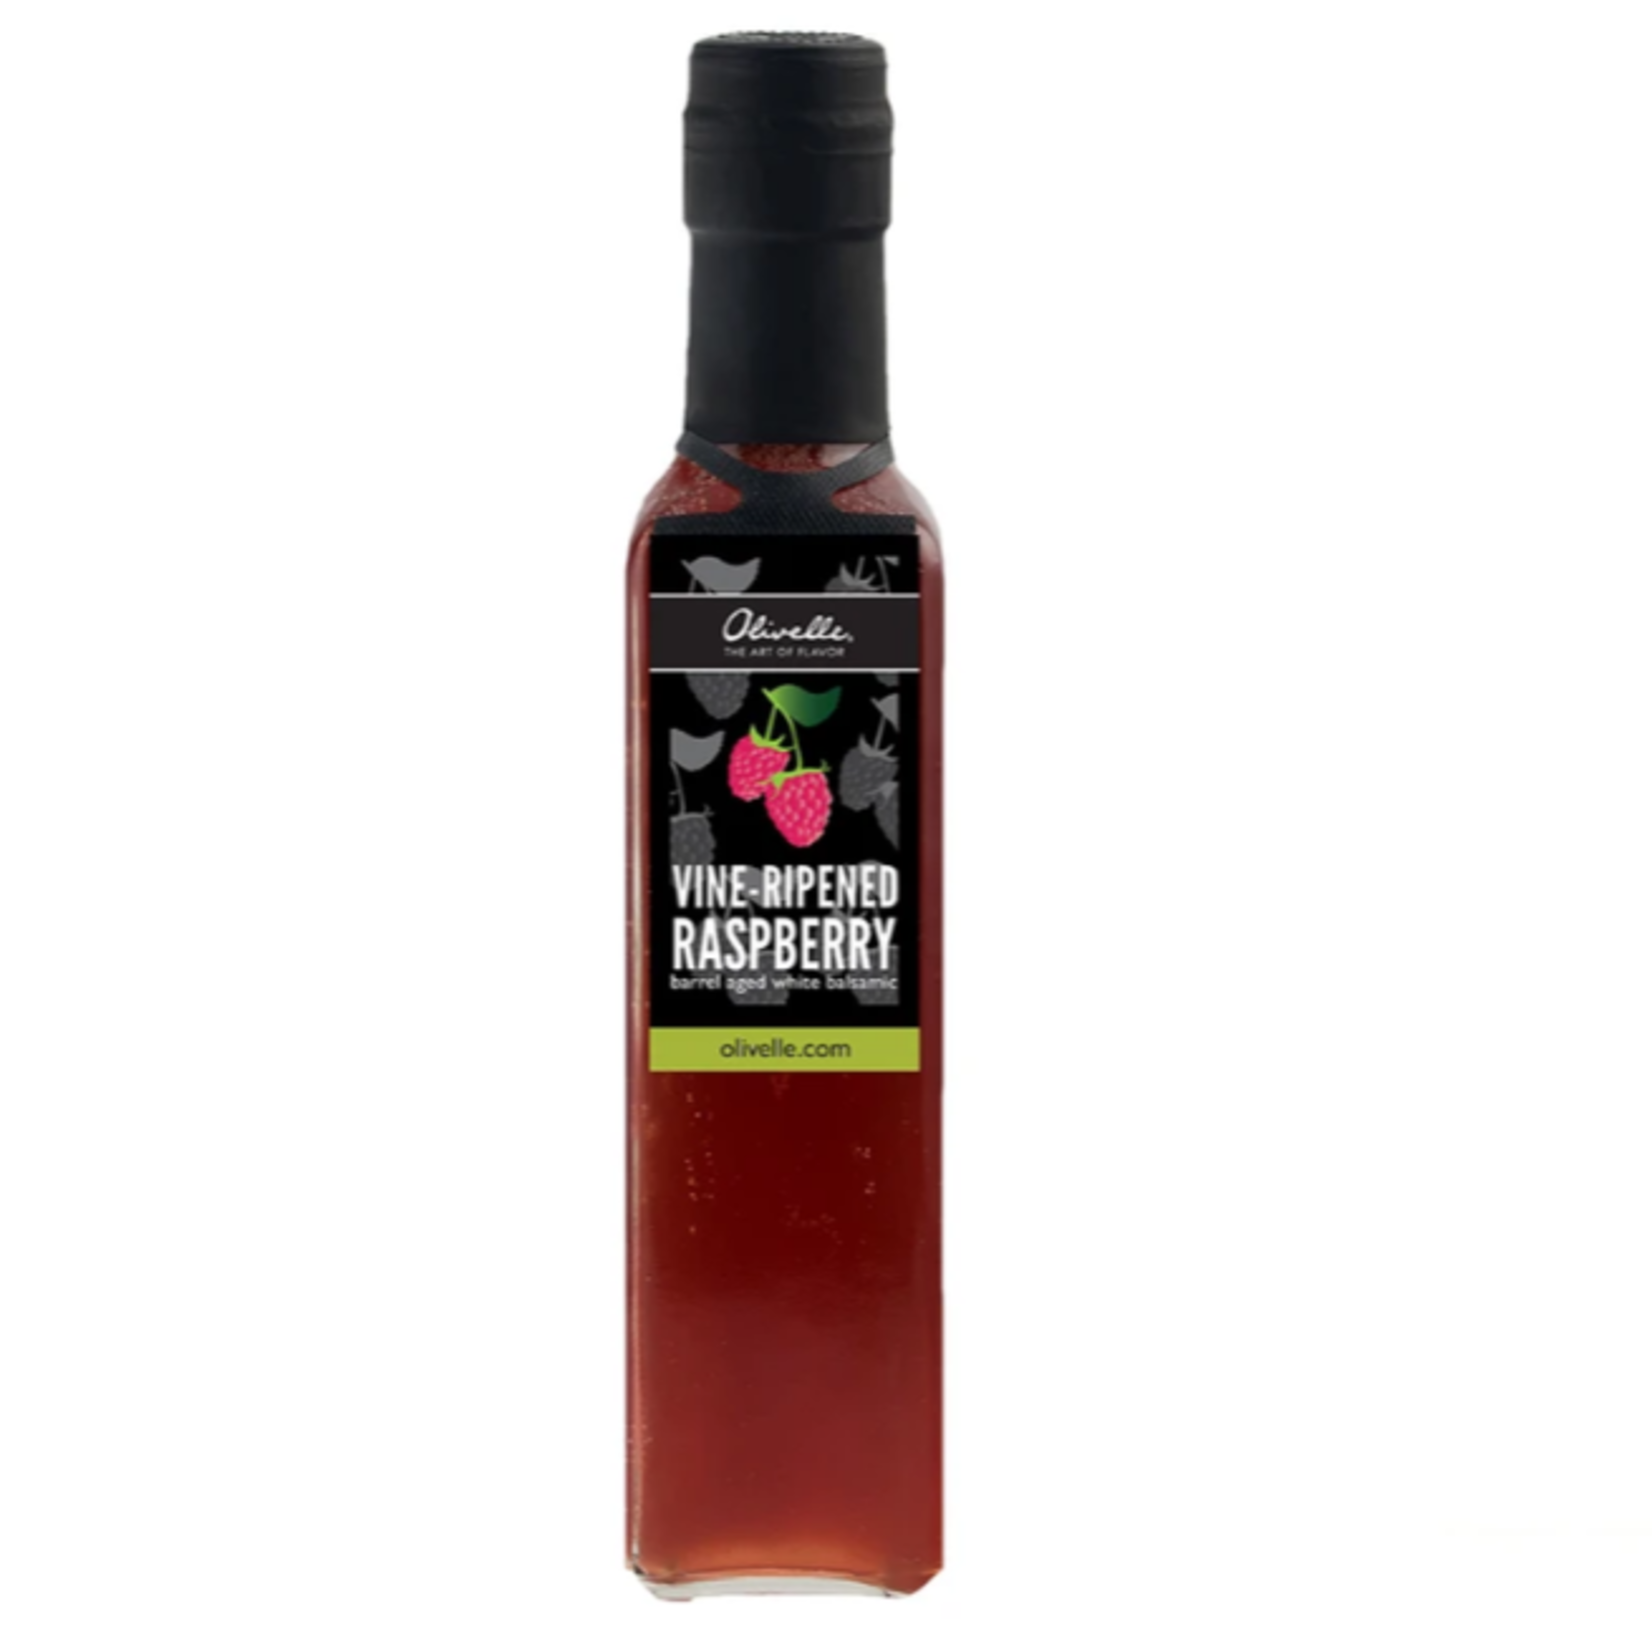 Olivelle Vine-Ripened Raspberry Balsamic Vinegar